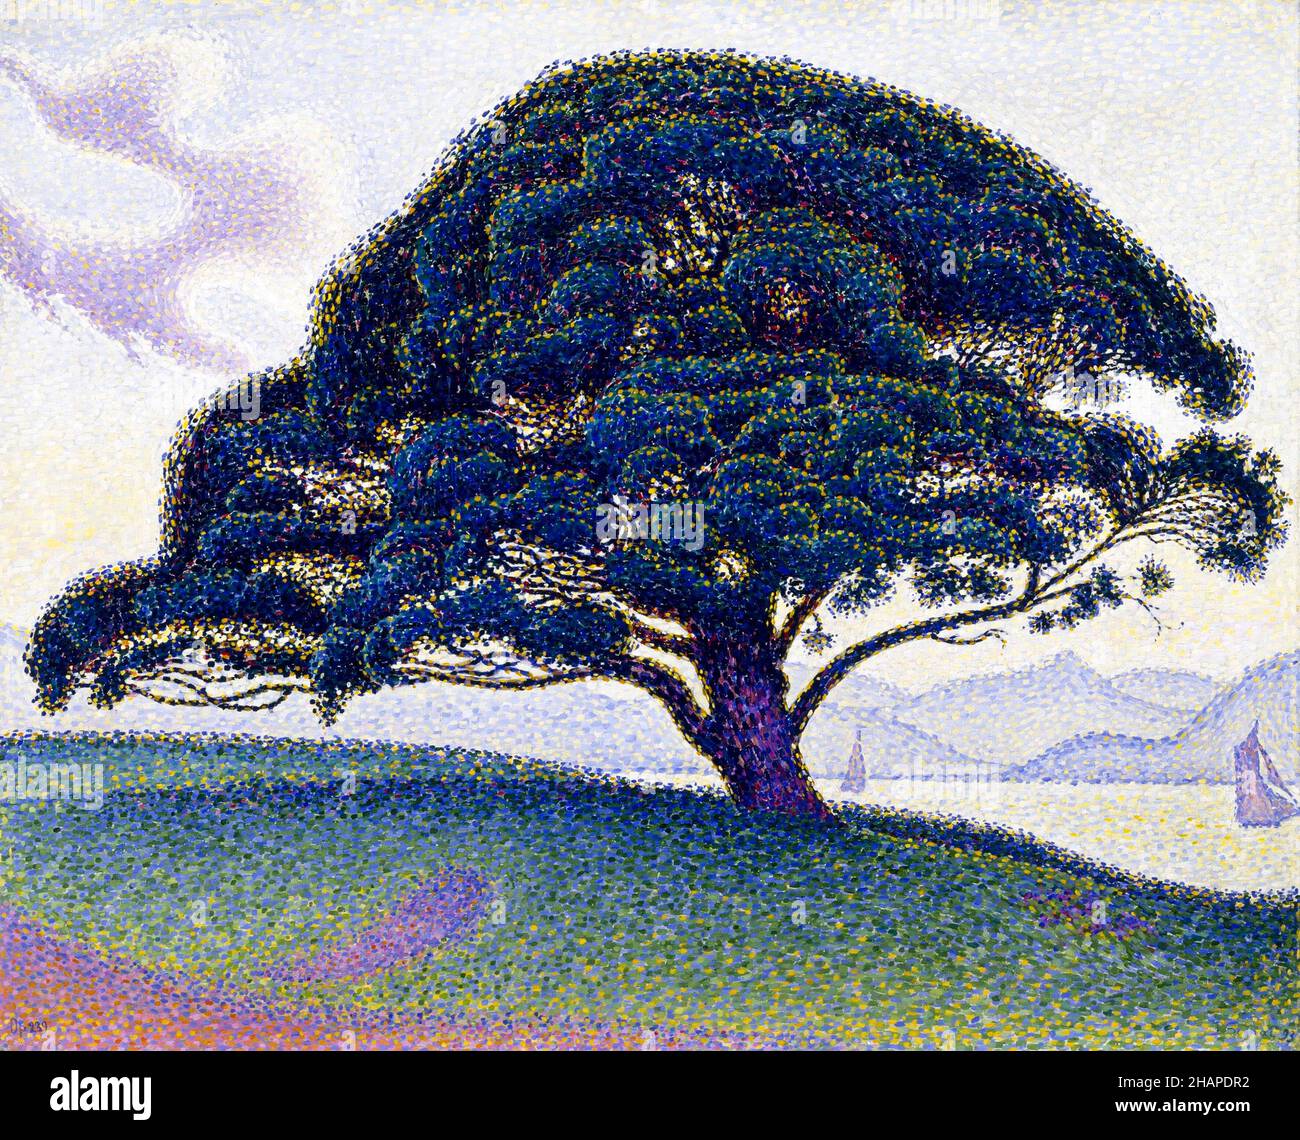 Le pin Bonaventure de Paul Signac (1863-1935), huile sur toile, 1893 Banque D'Images